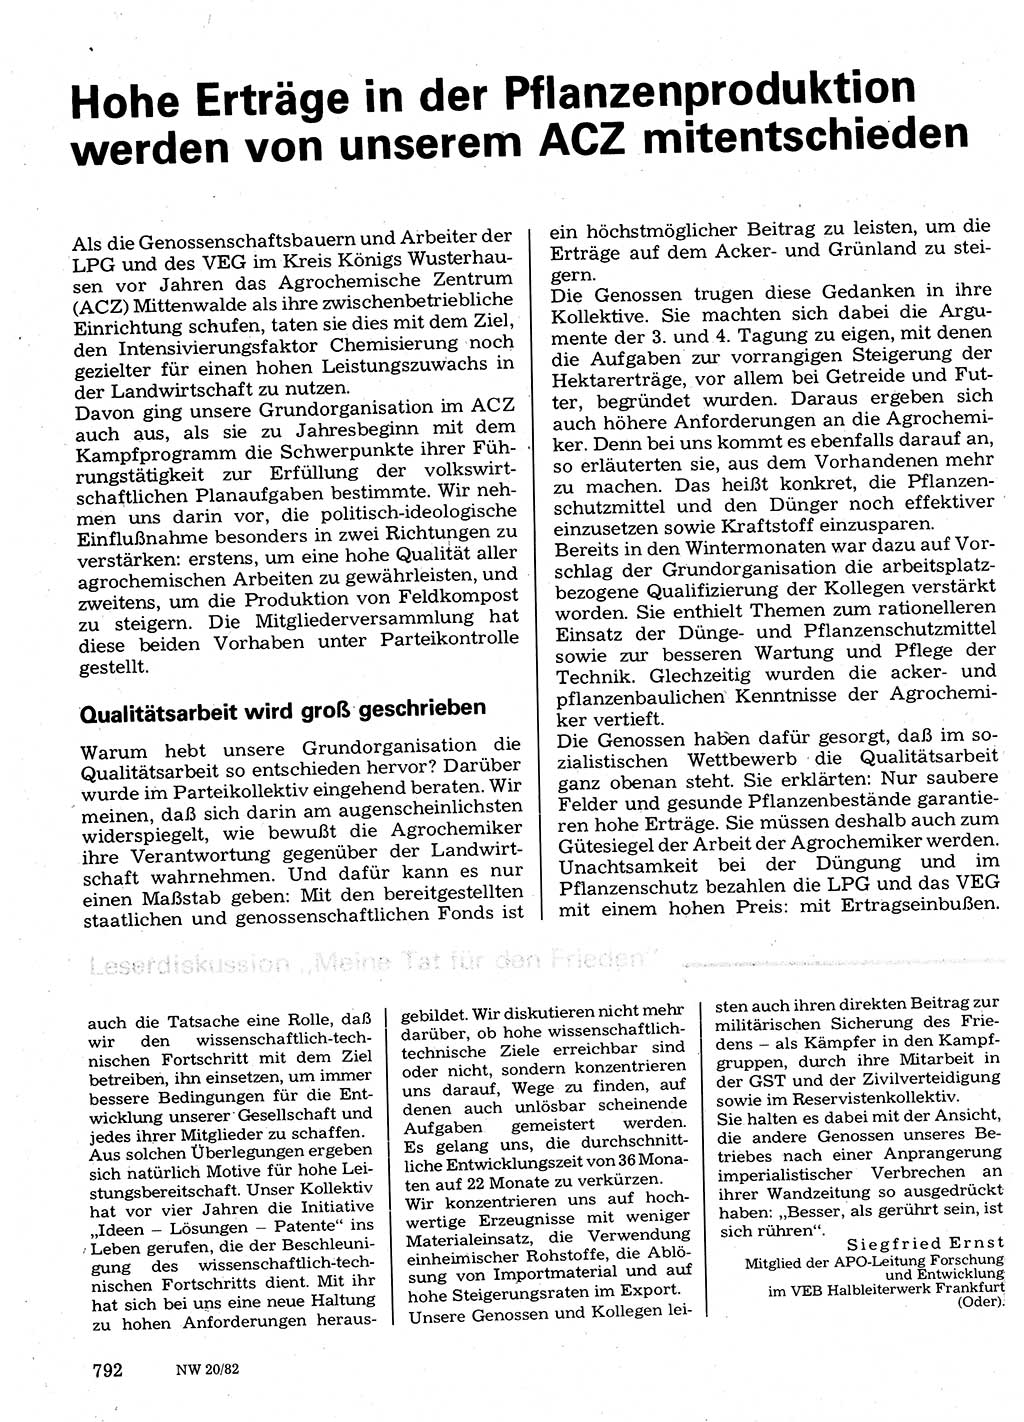 Neuer Weg (NW), Organ des Zentralkomitees (ZK) der SED (Sozialistische Einheitspartei Deutschlands) für Fragen des Parteilebens, 37. Jahrgang [Deutsche Demokratische Republik (DDR)] 1982, Seite 792 (NW ZK SED DDR 1982, S. 792)